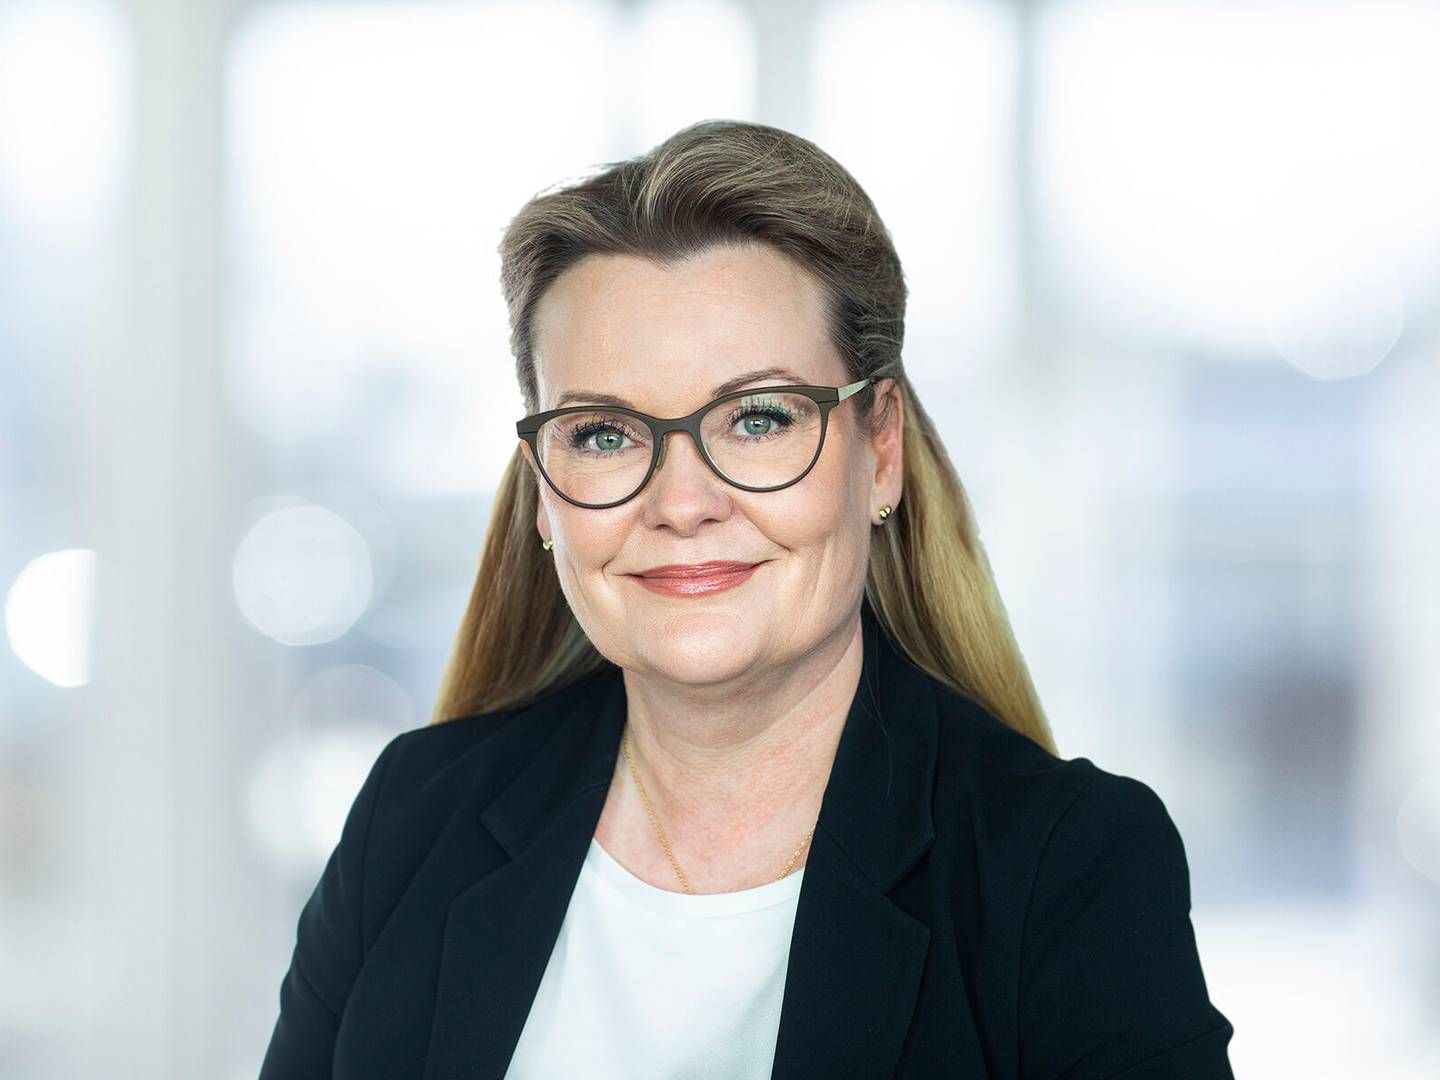 Mette Damgaard er uddannet jurist fra Aarhus Universitet i 2001 og har i løbet af karrieren arbejdet hos blandt andre Salling Group, Danish Crown og Carlsberg.